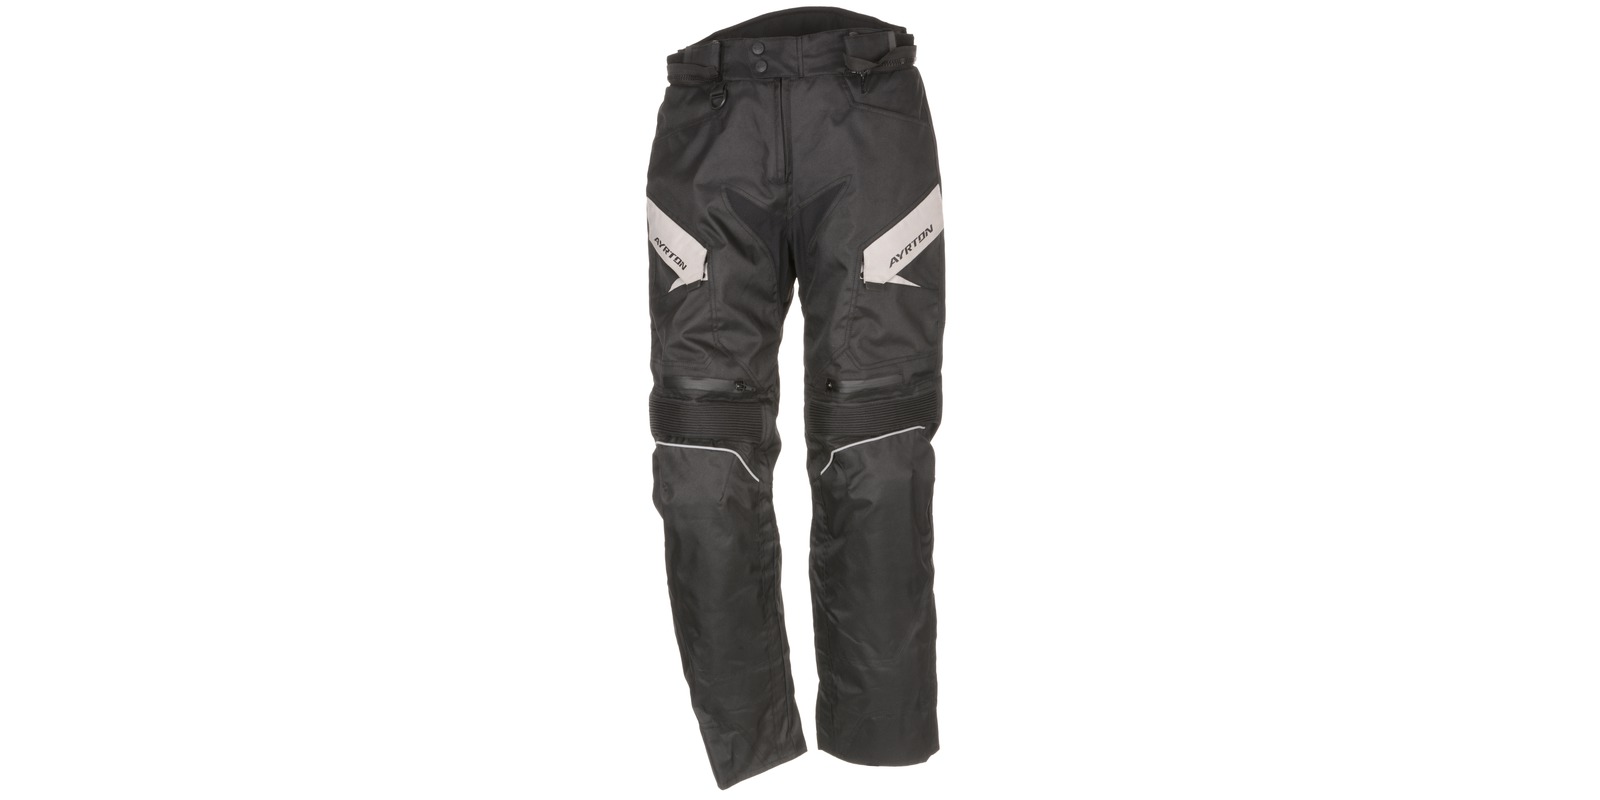 Obrázek produktu kalhoty Brock, AYRTON (černé/šedé) M110-83